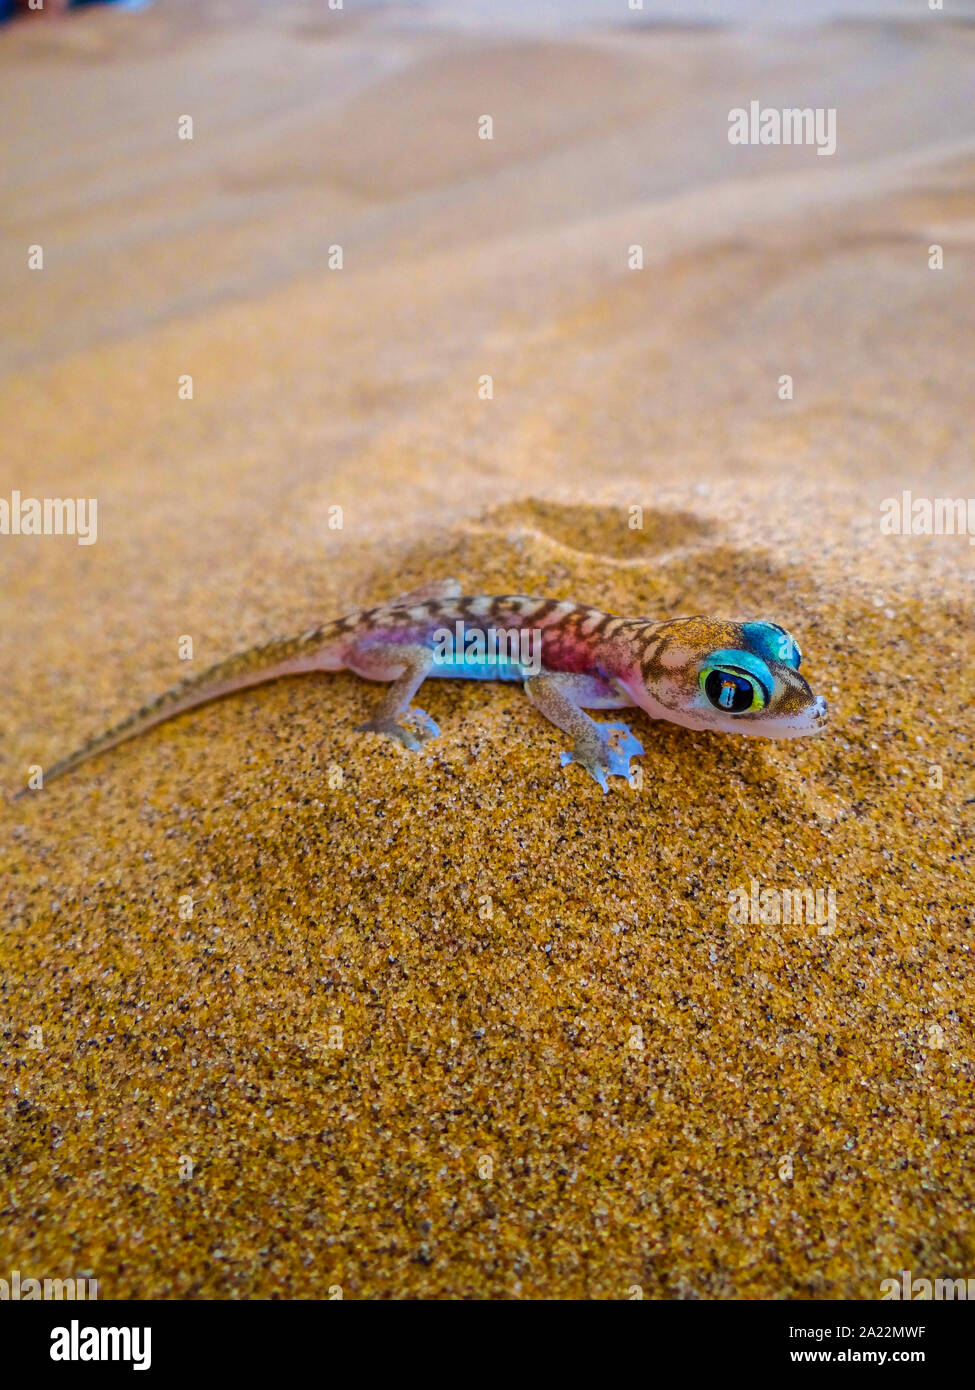 Namib un gecko est de poser dans le sable. Photographie prise dans le Namib près de Swakopmund dans l'est de la Namibie Banque D'Images